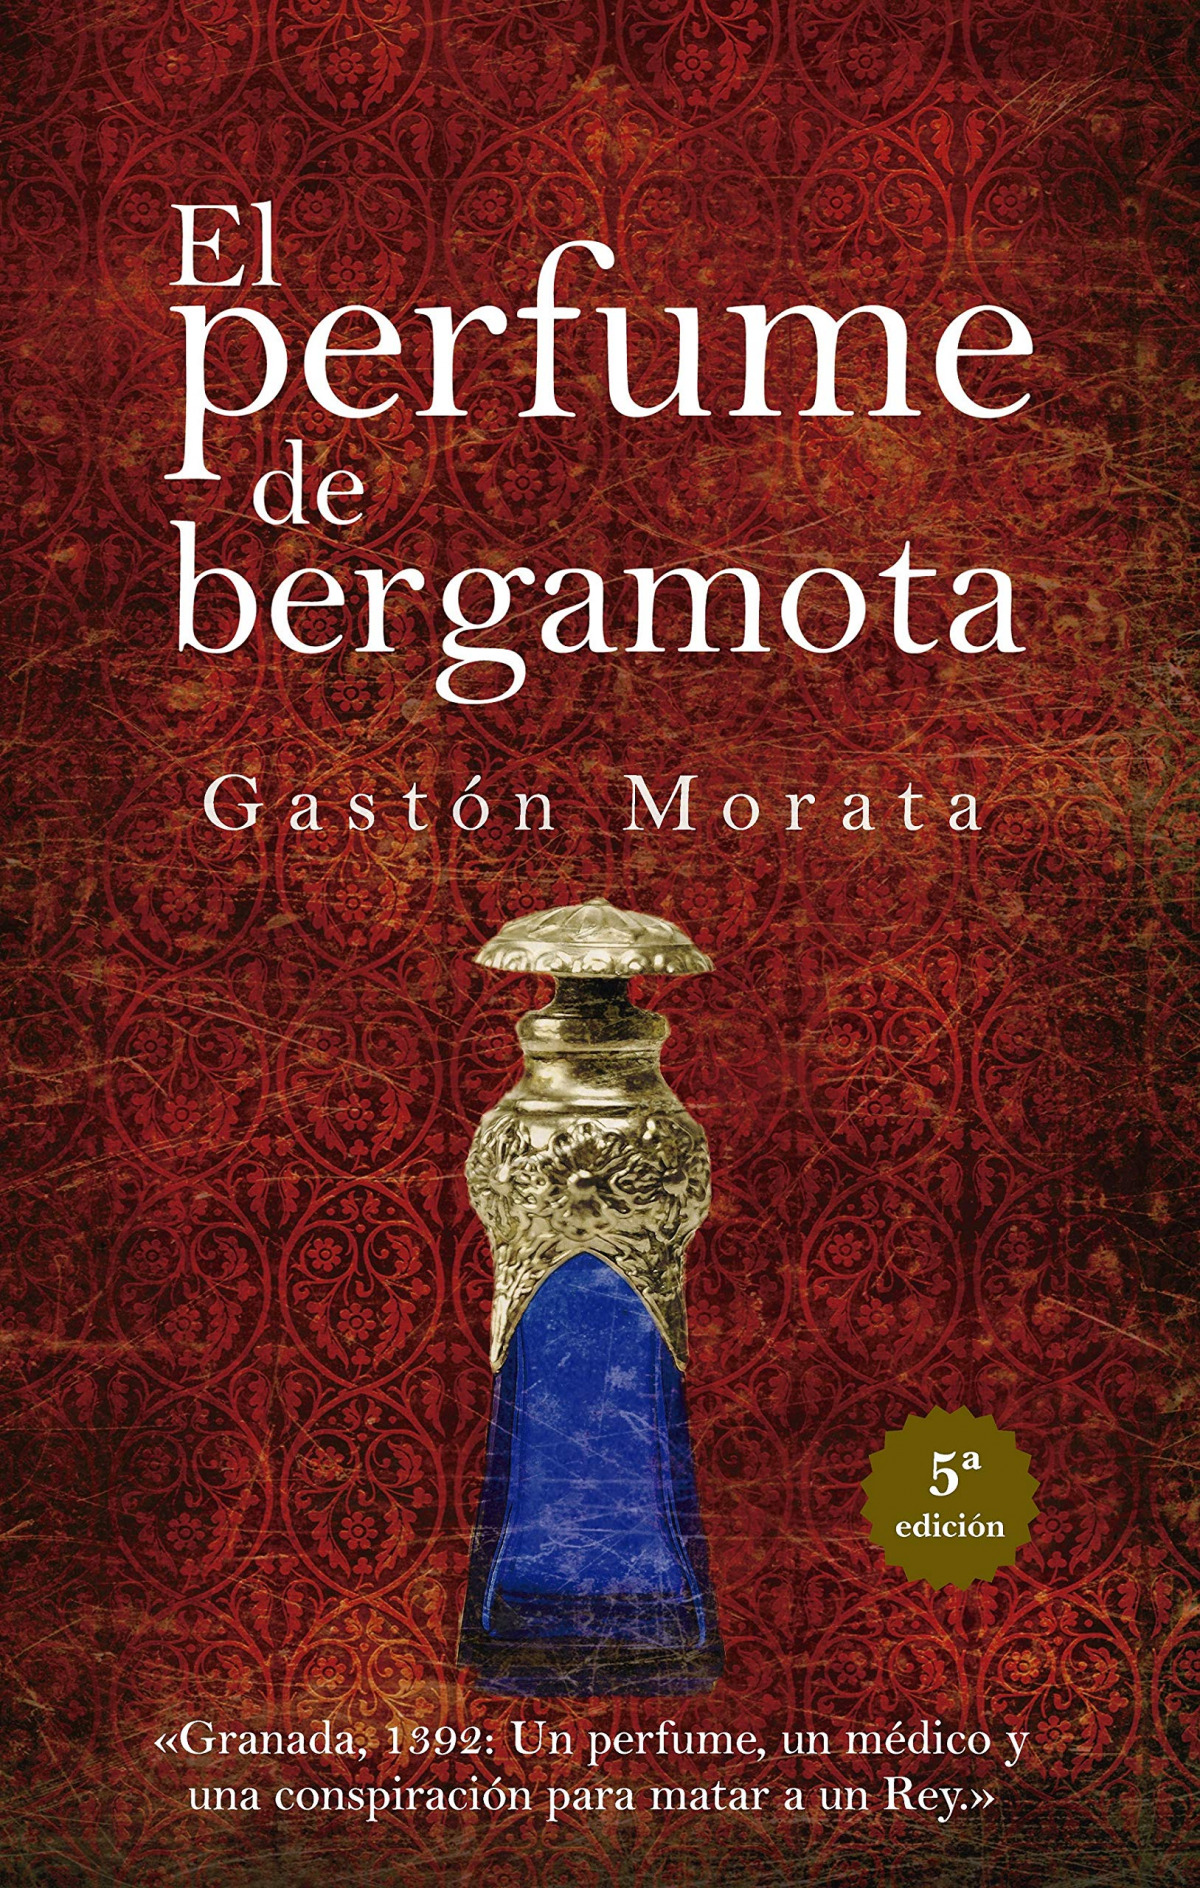 Perfume de bergamota, el (n.e.) - GASTÓN MORATA, JOSE LUIS